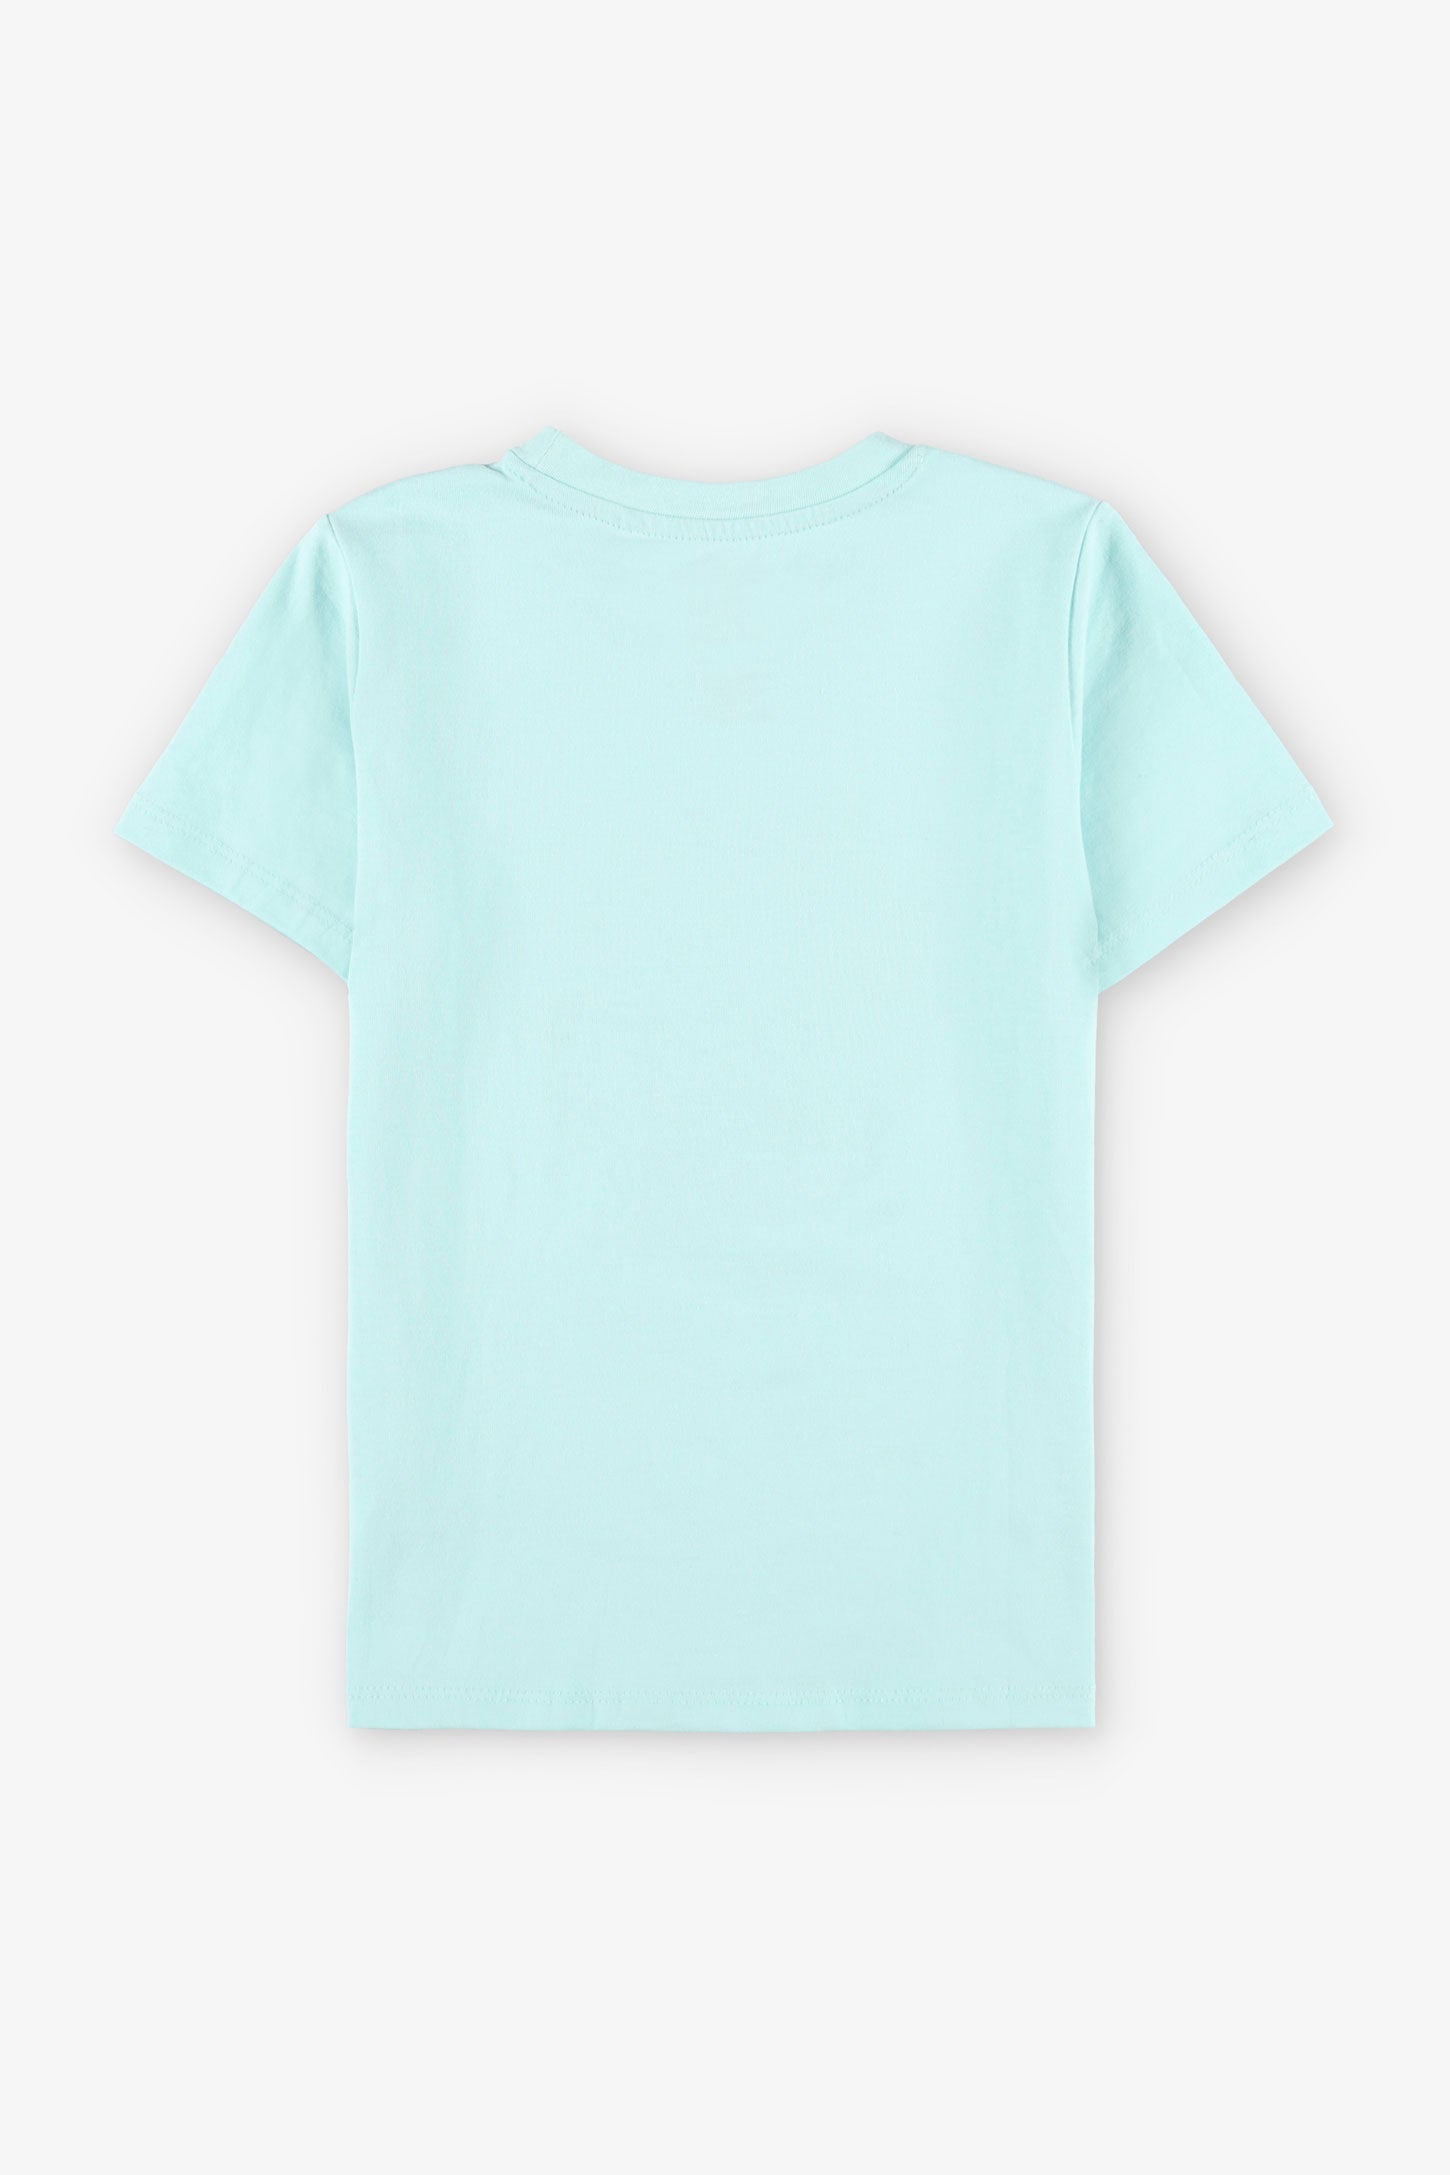 T-shirt imprimé en coton, 2/20$ - Enfant garçon && MENTHE